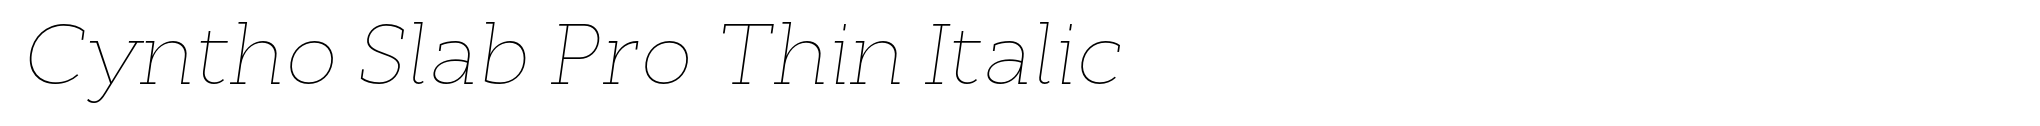 Cyntho Slab Pro Thin Italic image